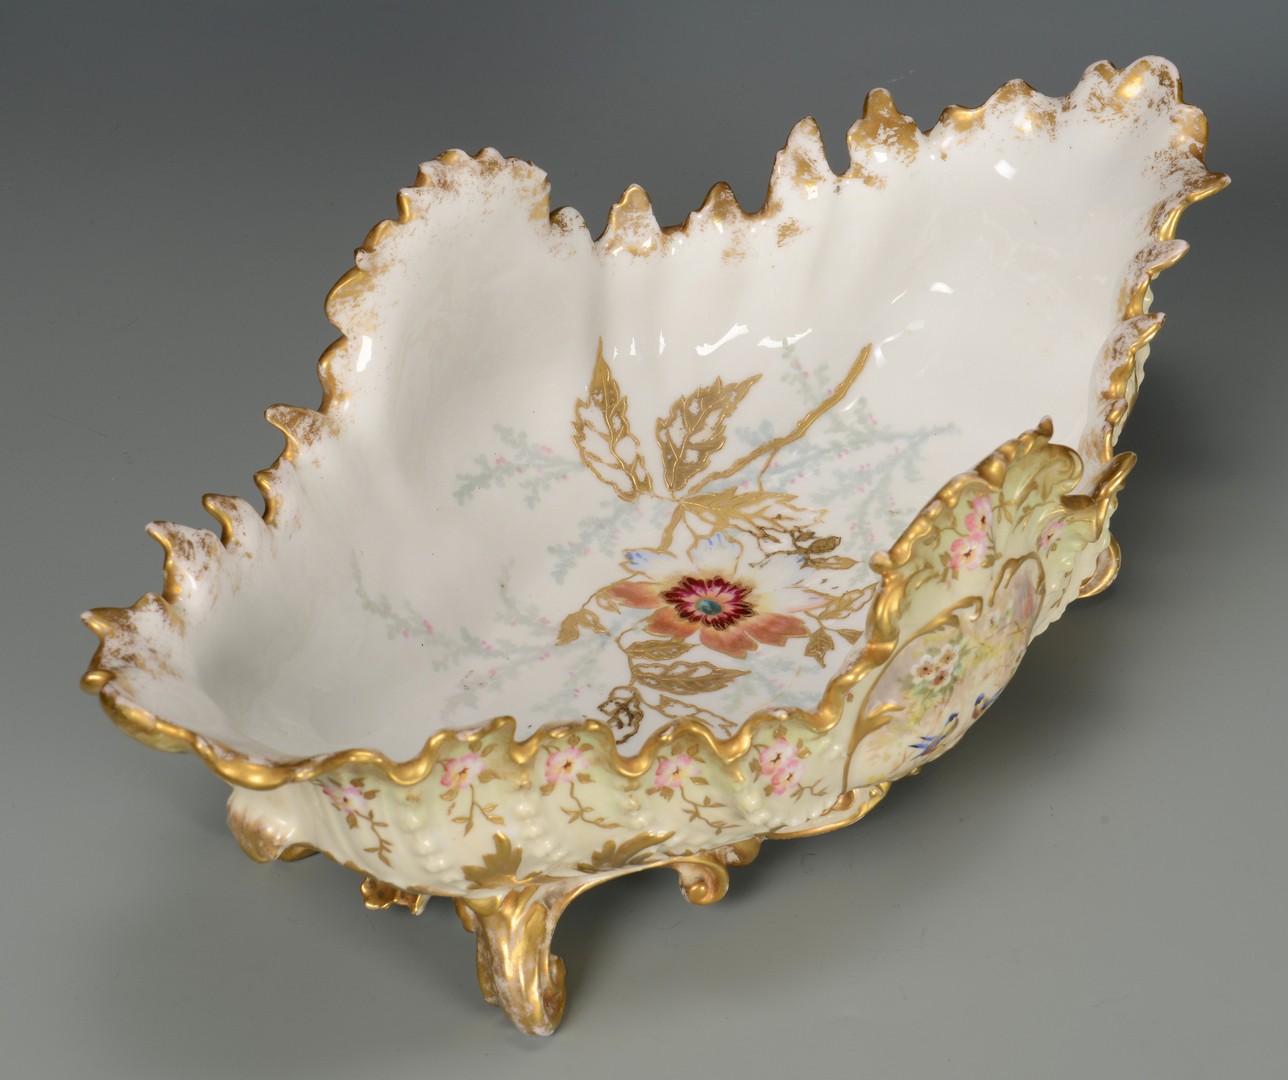 Lot 456: German Porcelain Centerpiece Bowl